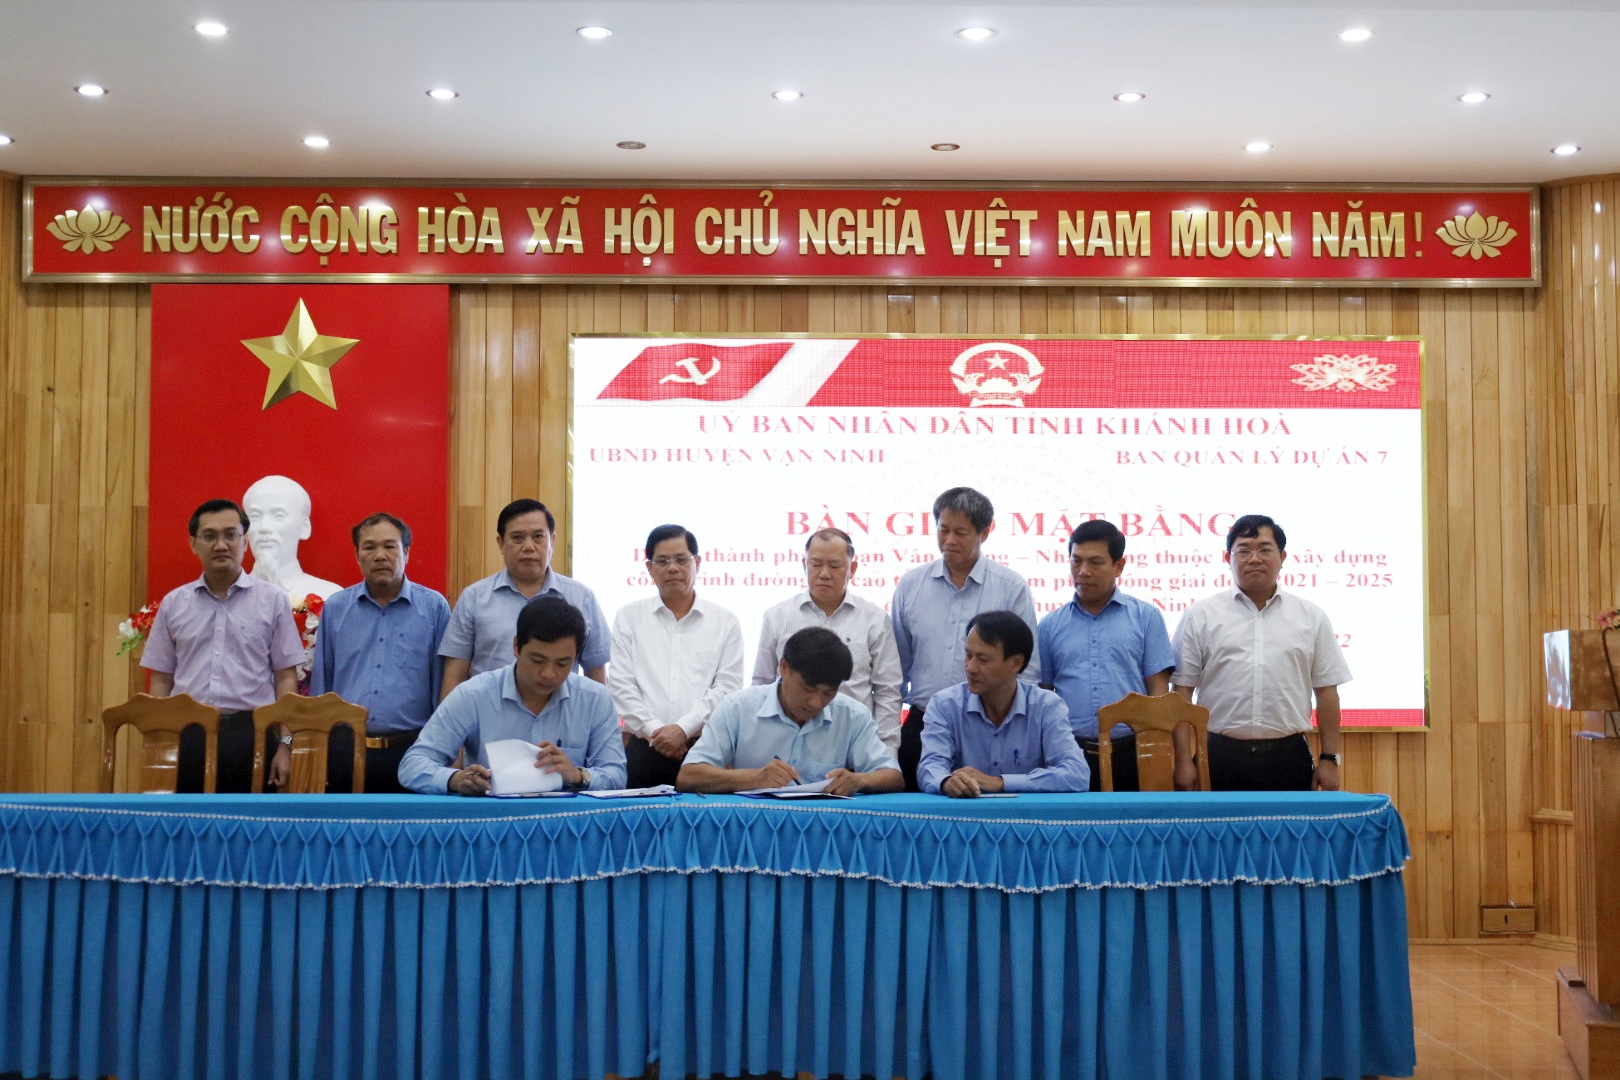 Lãnh đạo tỉnh chứng kiến lễ ký kết bàn giao mặt bằng giữa huyện Vạn Ninh và Ban Quản lý dự án 7.